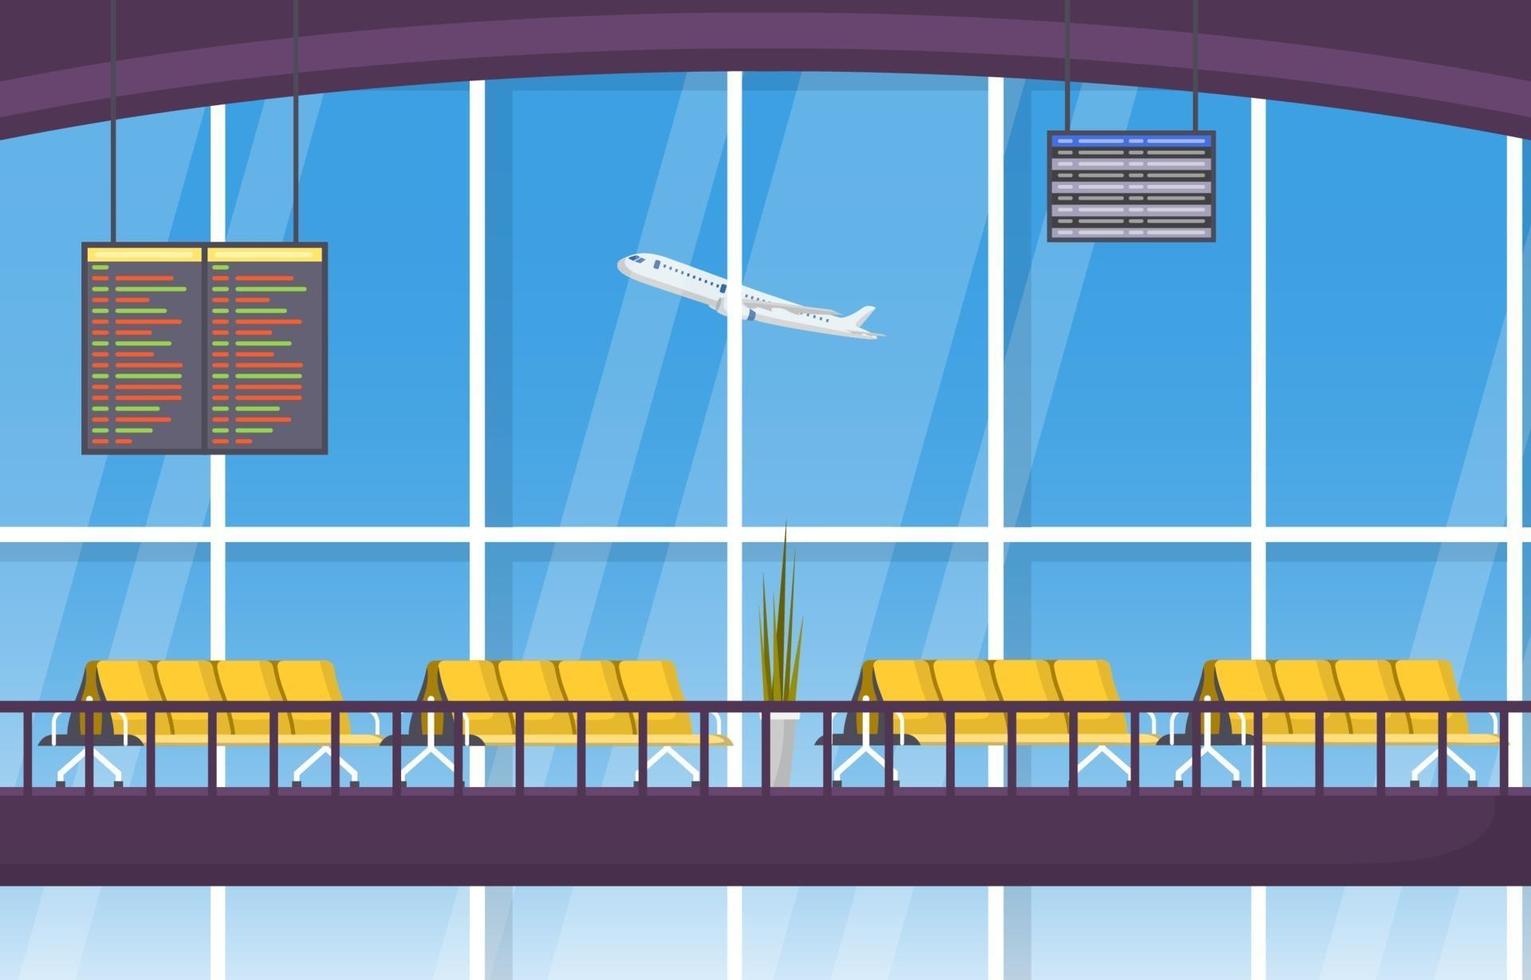 aeropuerto, avión, terminal, puerta, sala de espera, pasillo, interior, plano, ilustración vector